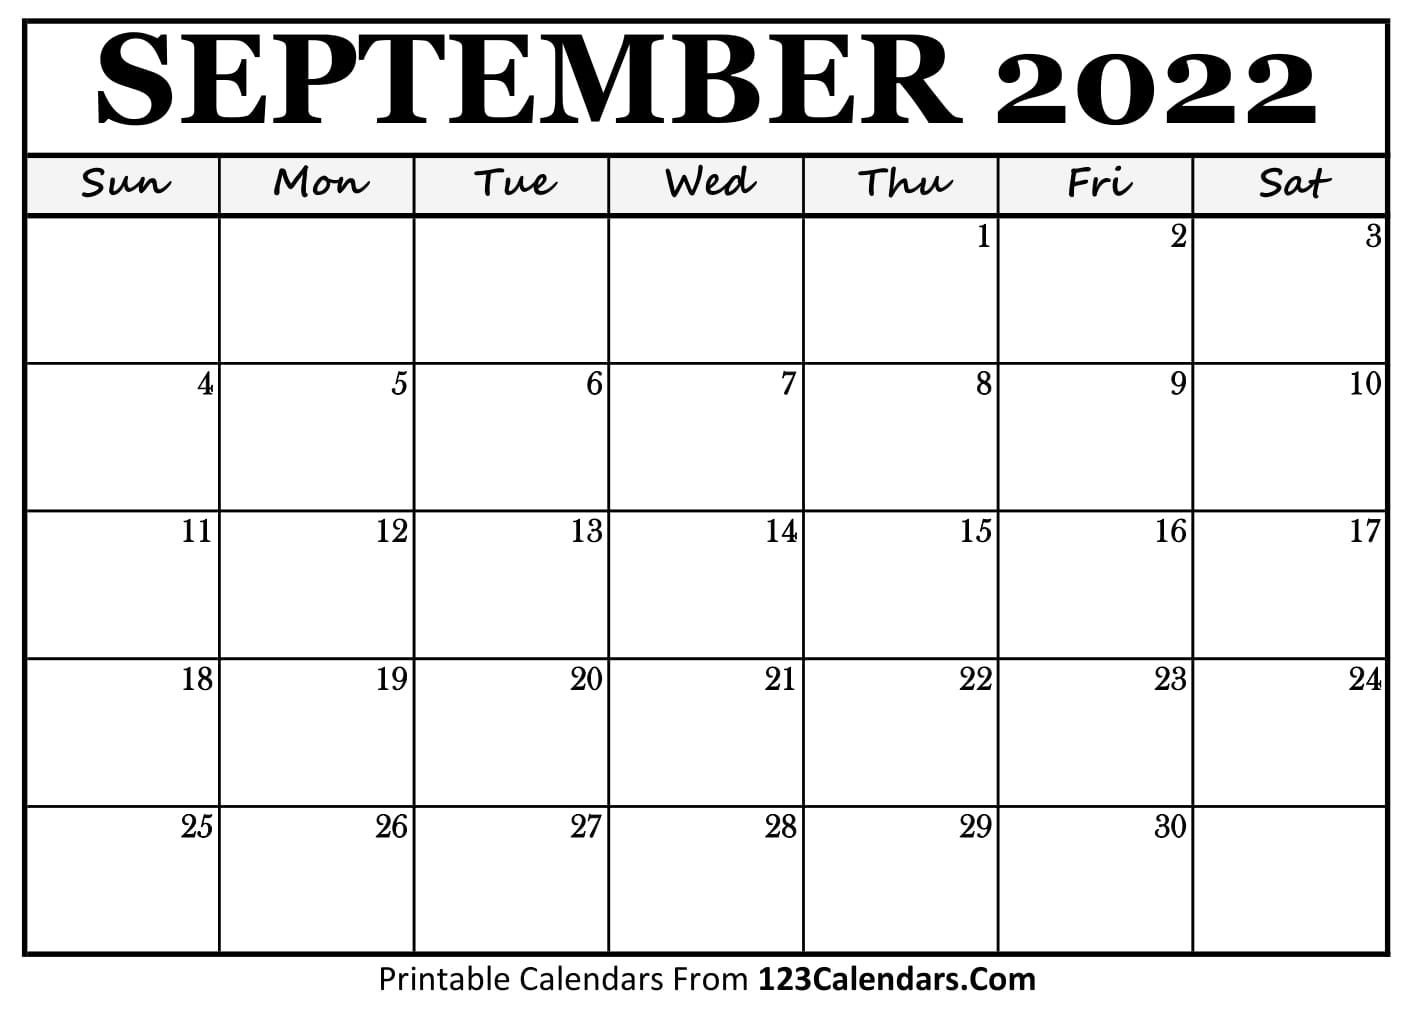 printable september 2022 calendar templates 123calendars com